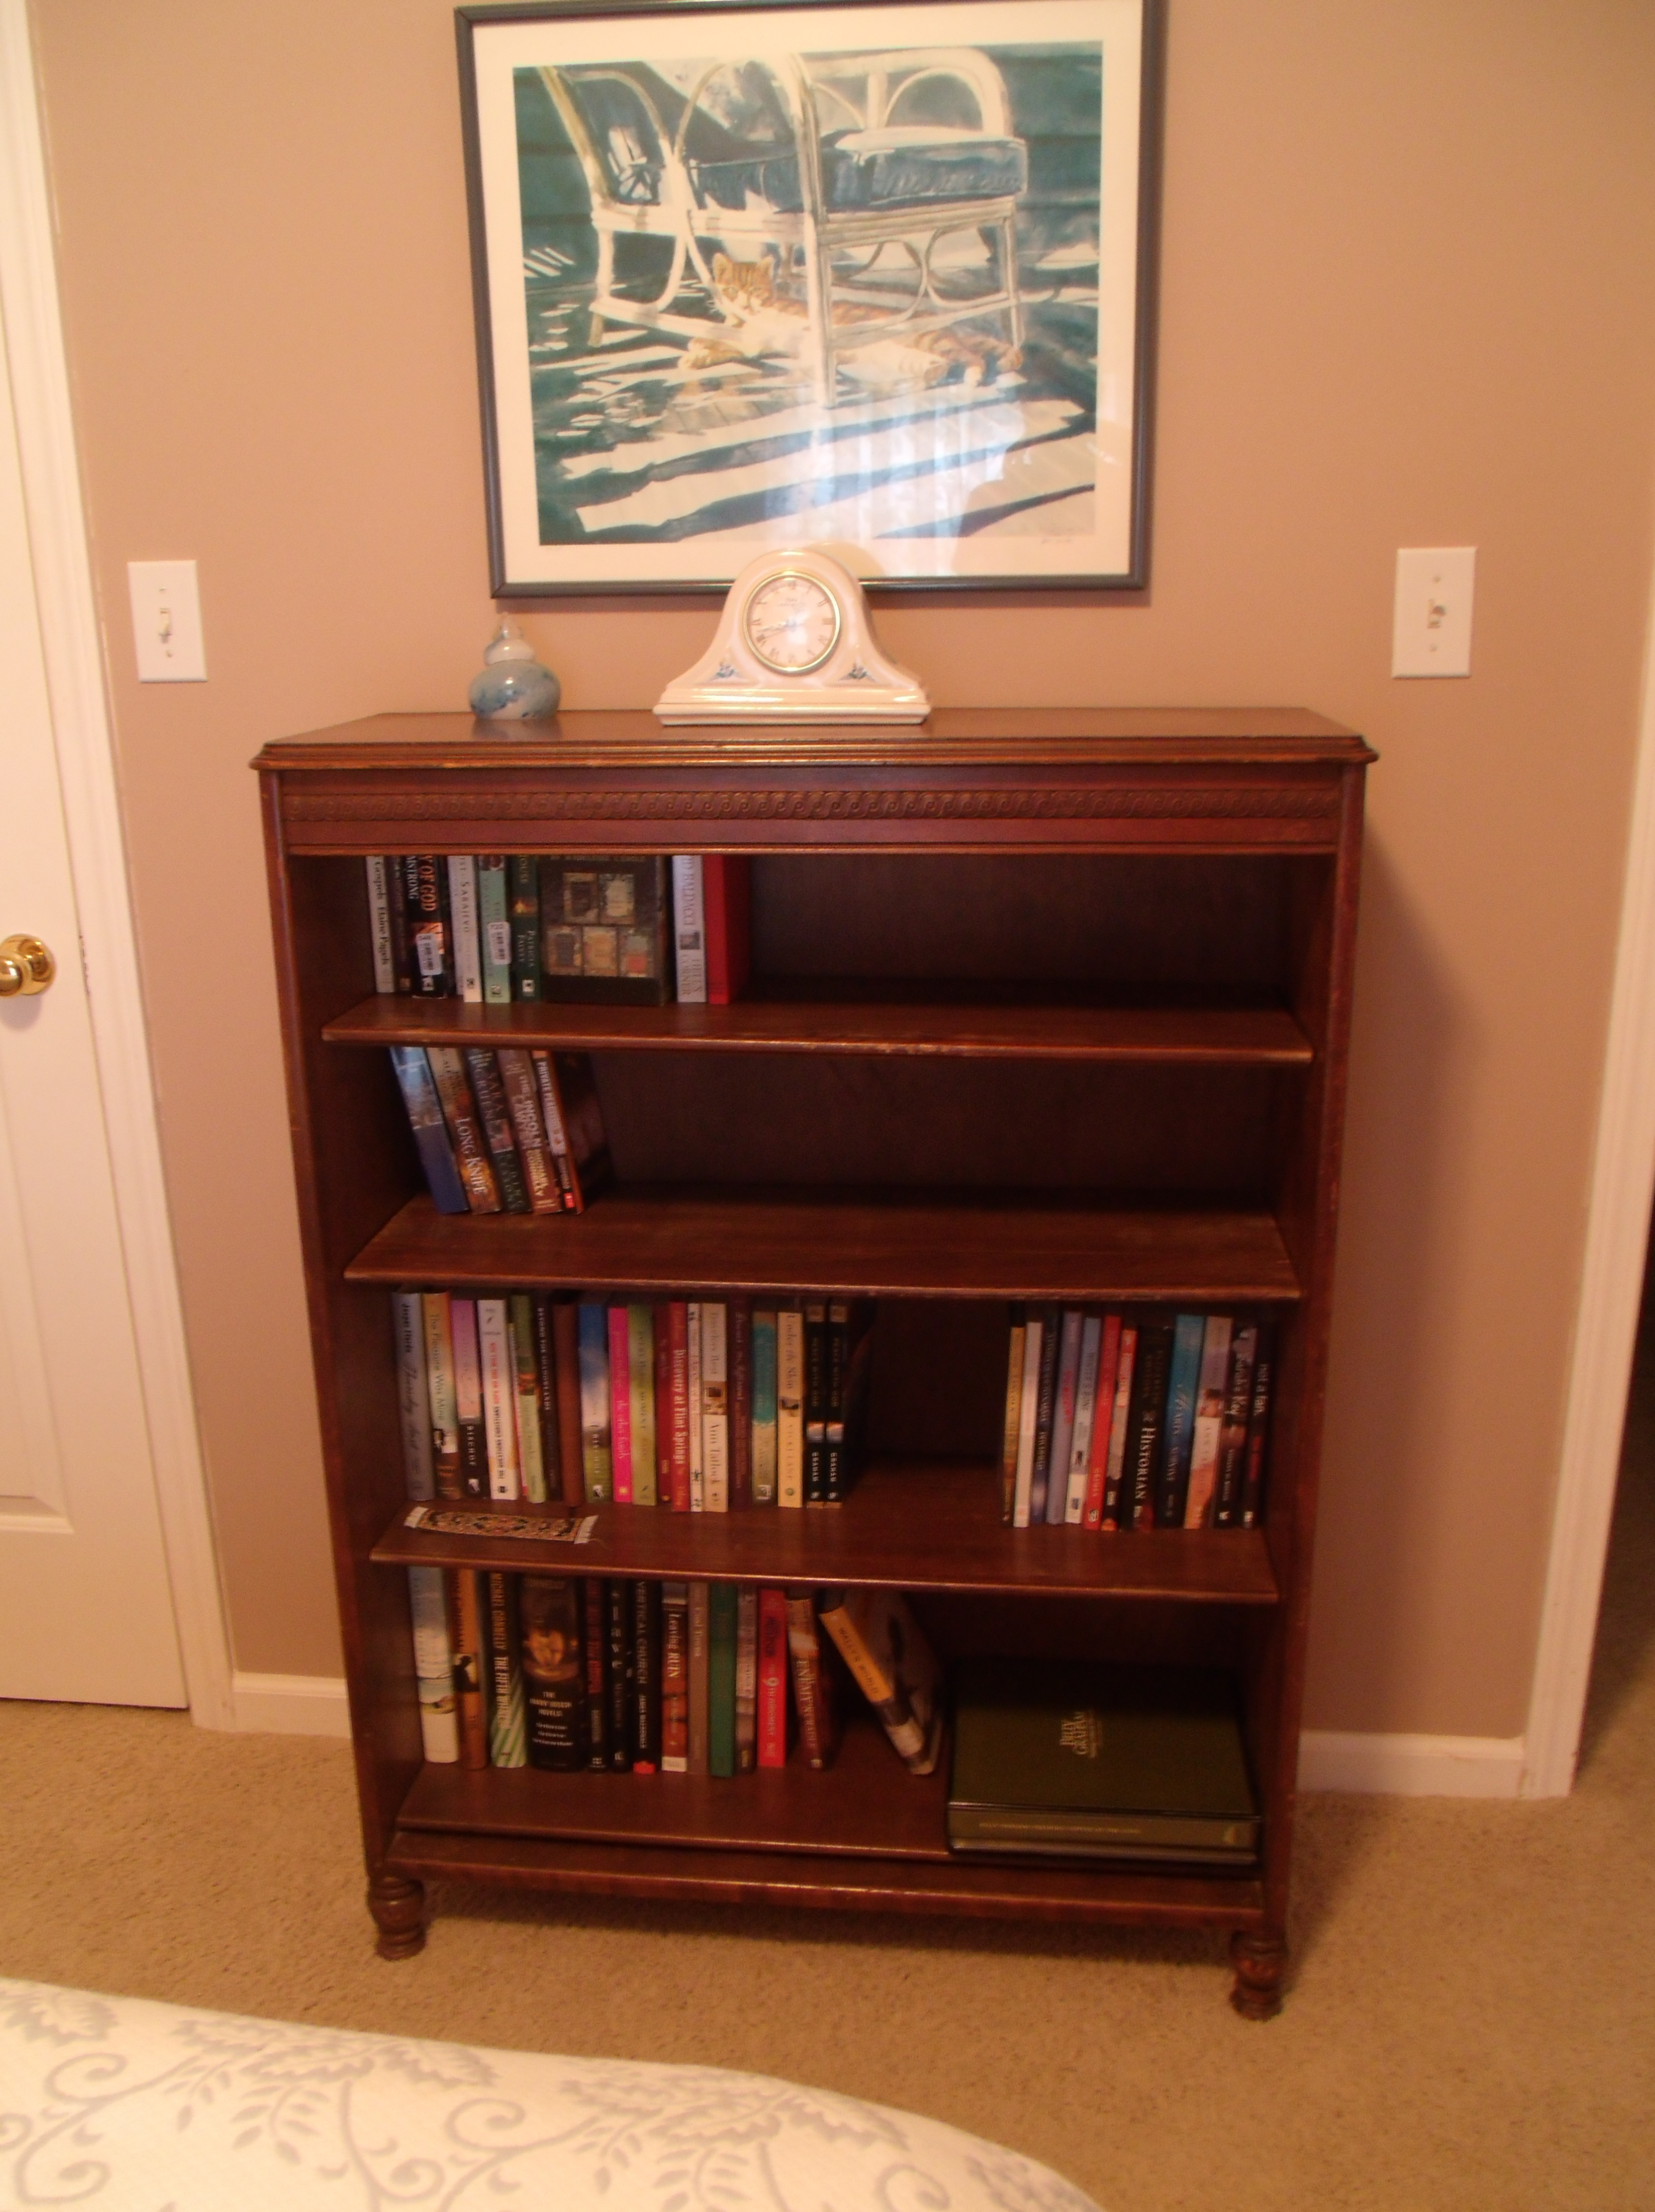 The Bookcase